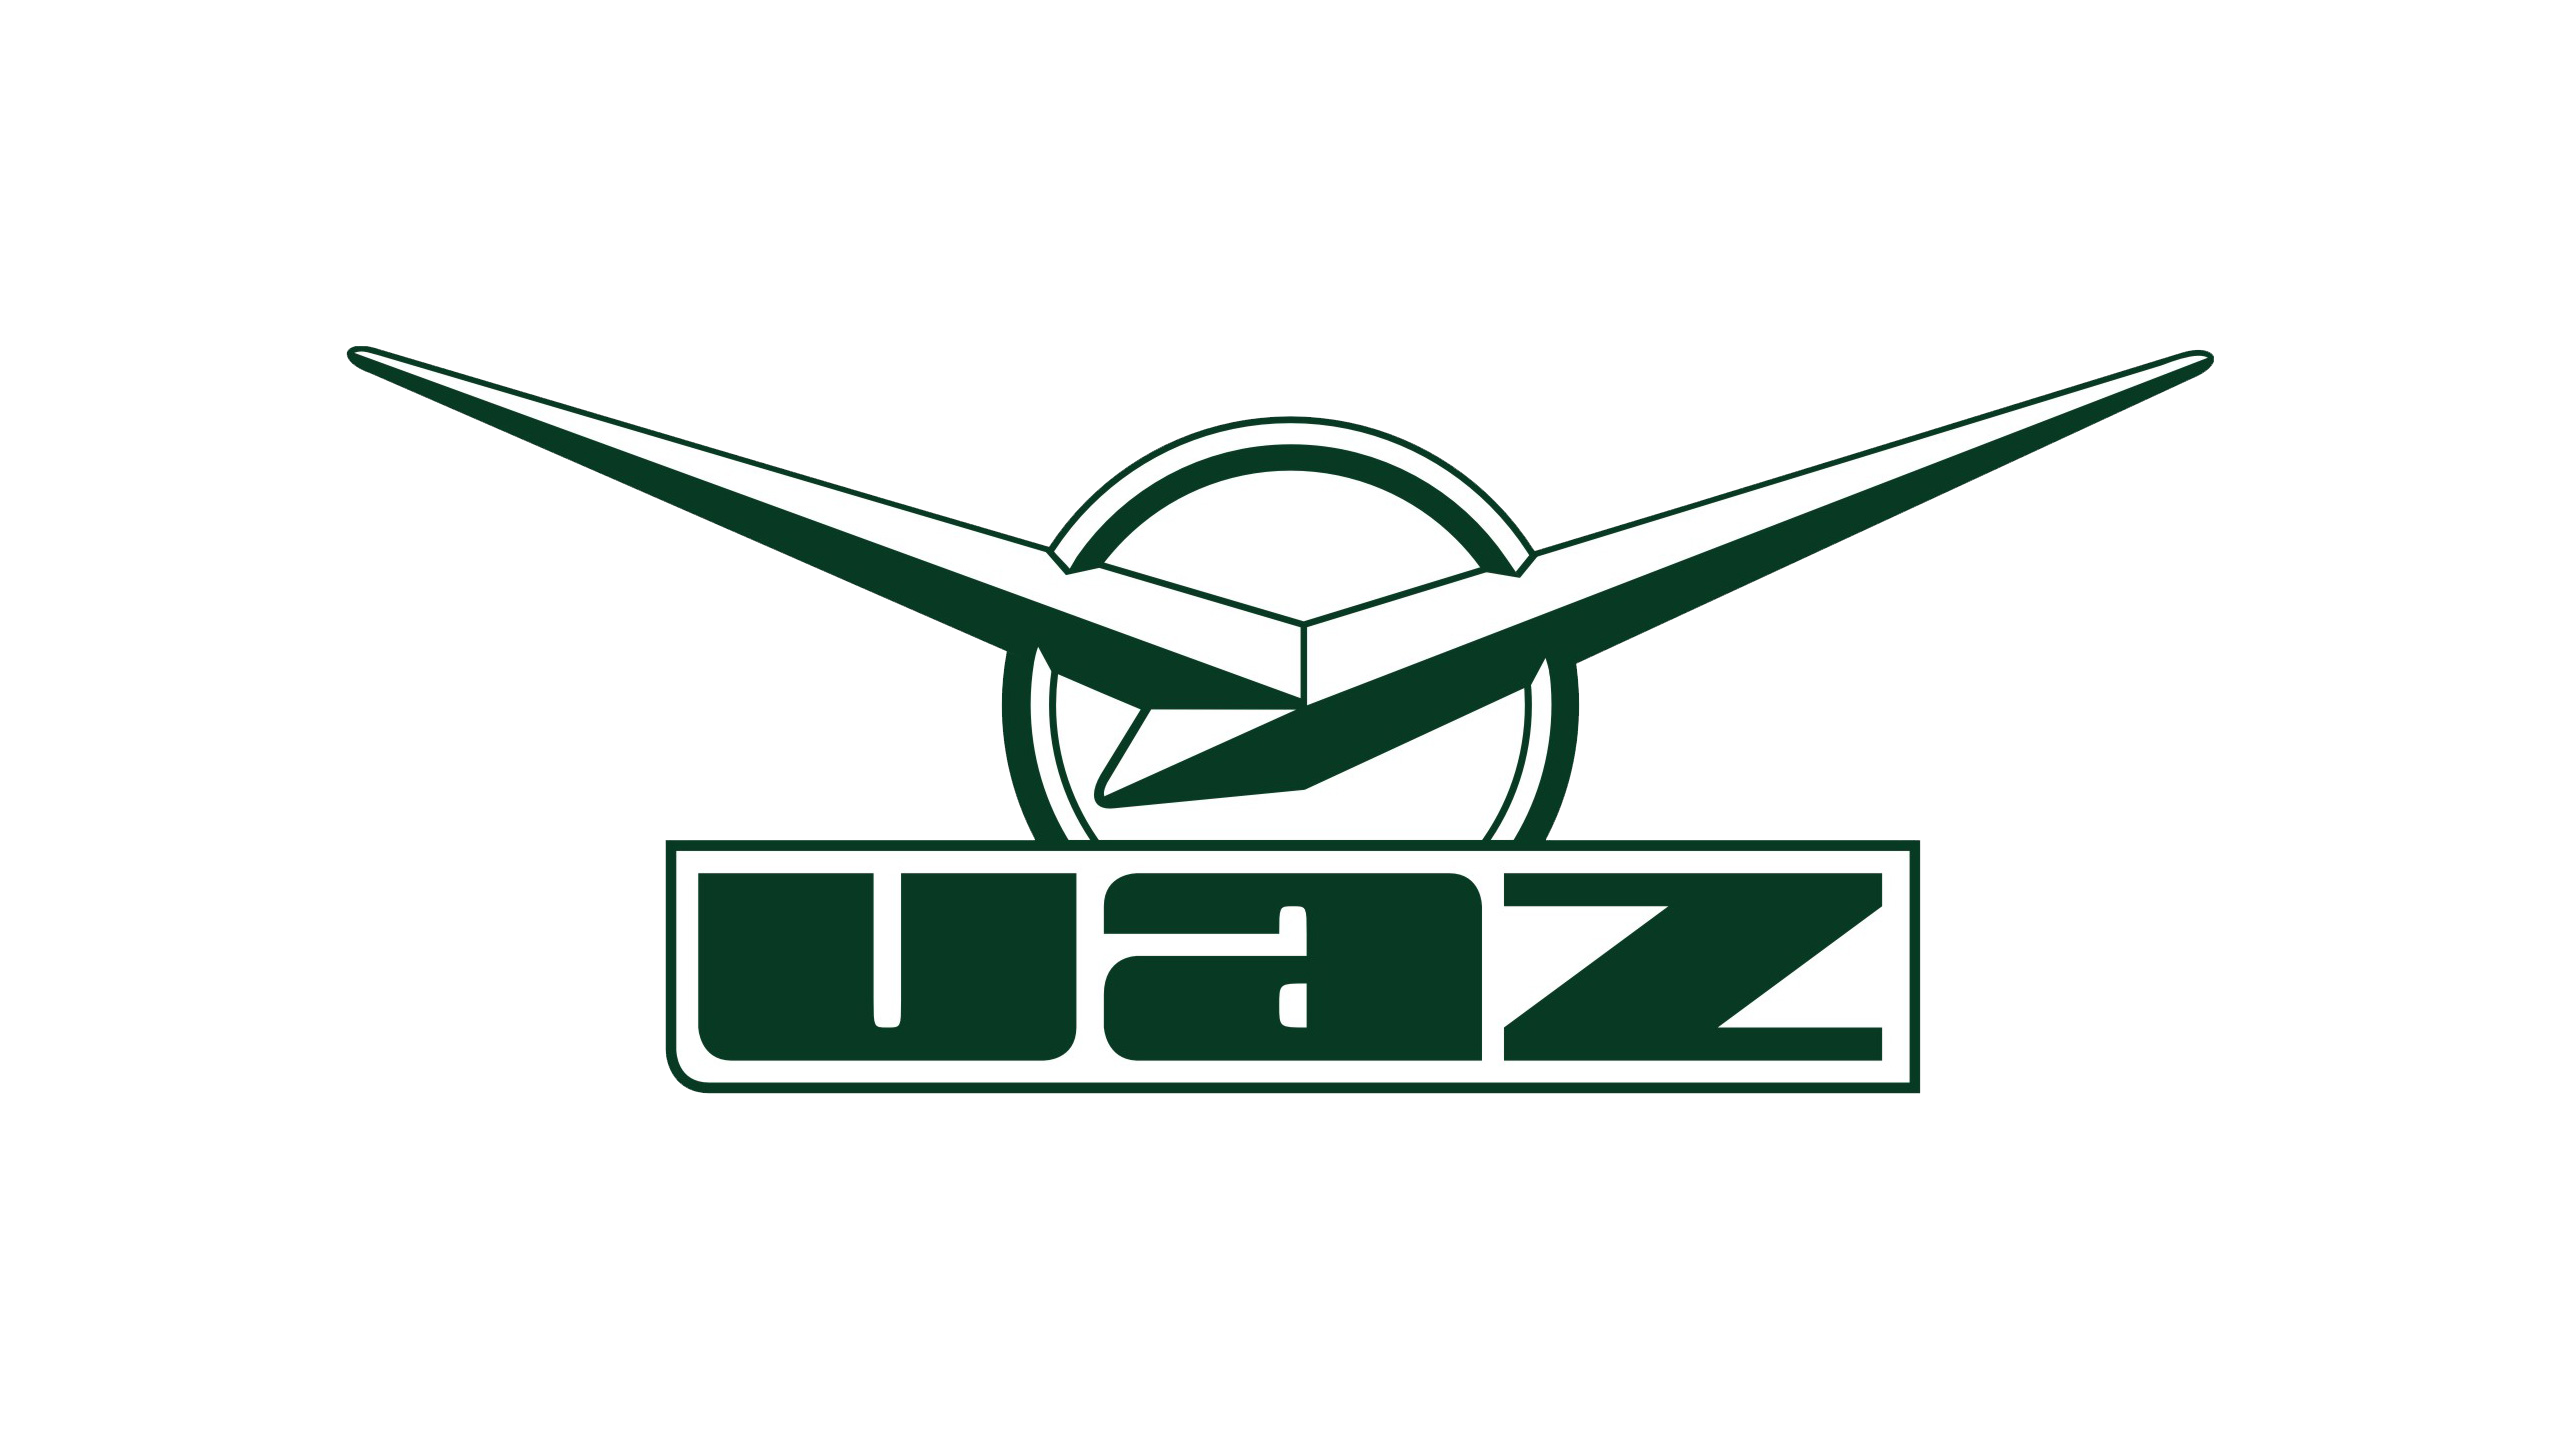 УАЗ логотип. Логотип УАЗ Патриот. УАЗ лого PNG. Логотип УАЗ gif.